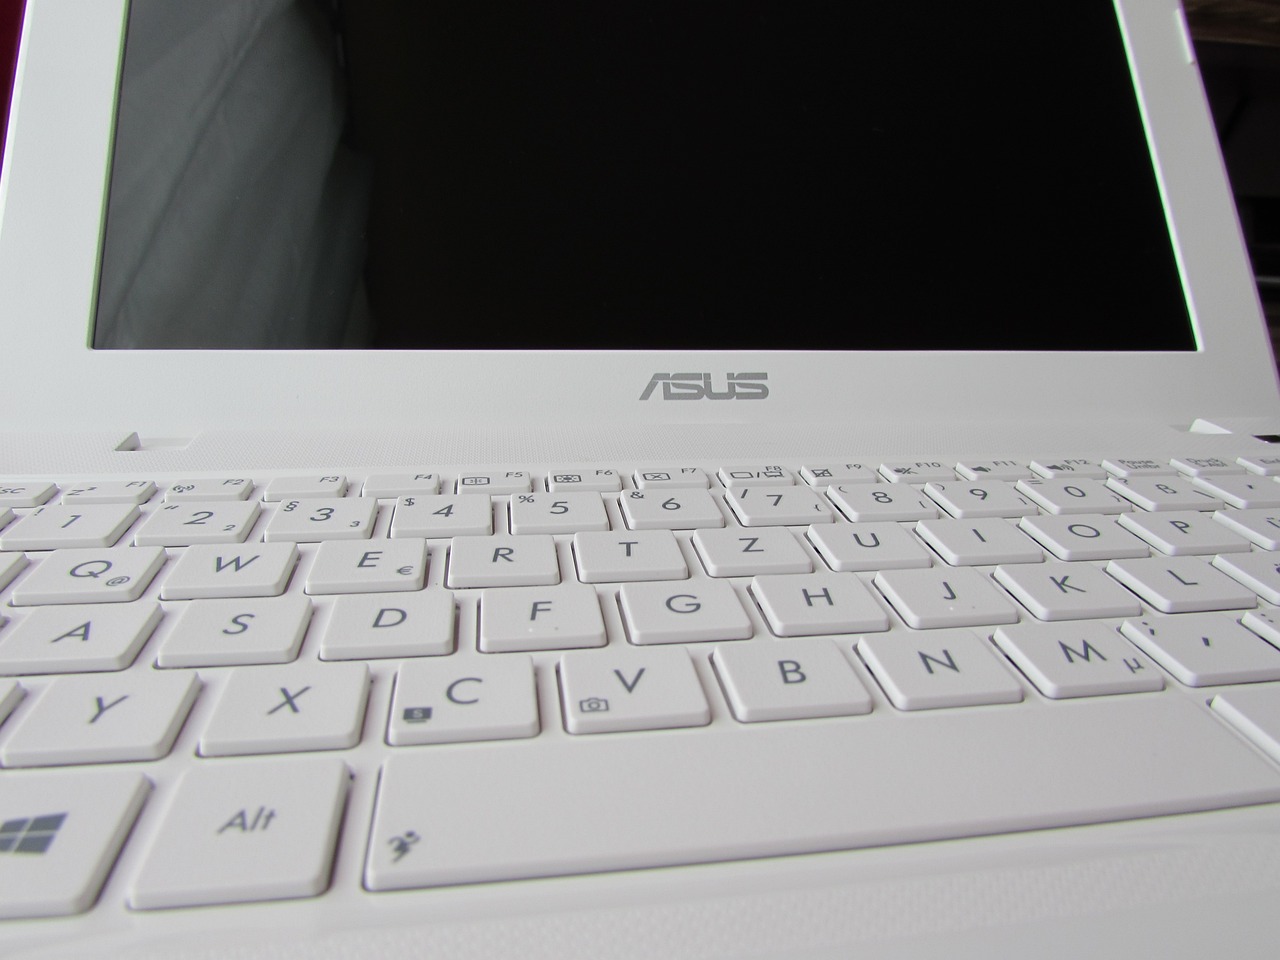 Comment choisir l’ordinateur portable Asus Zenbook qui convient à ses besoins en termes de performance et de fonctionnalité ?